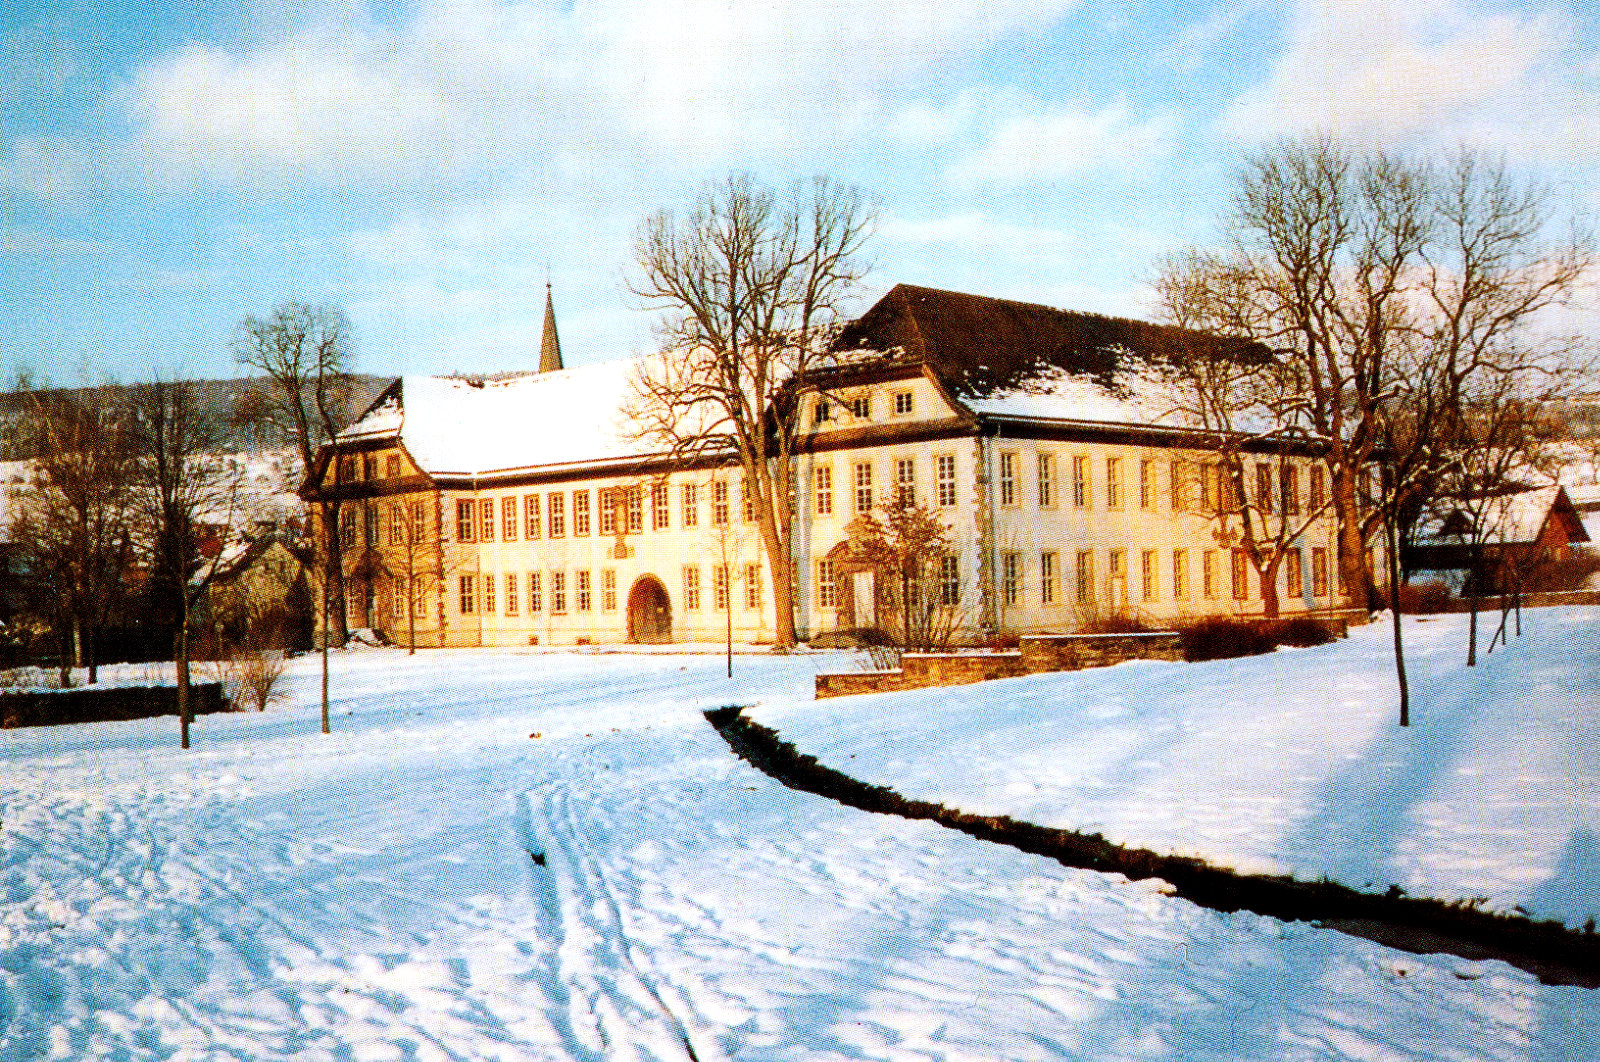 Koptisch-Orthodoxes Kloster in Höxter - Brenkhausen im Winter